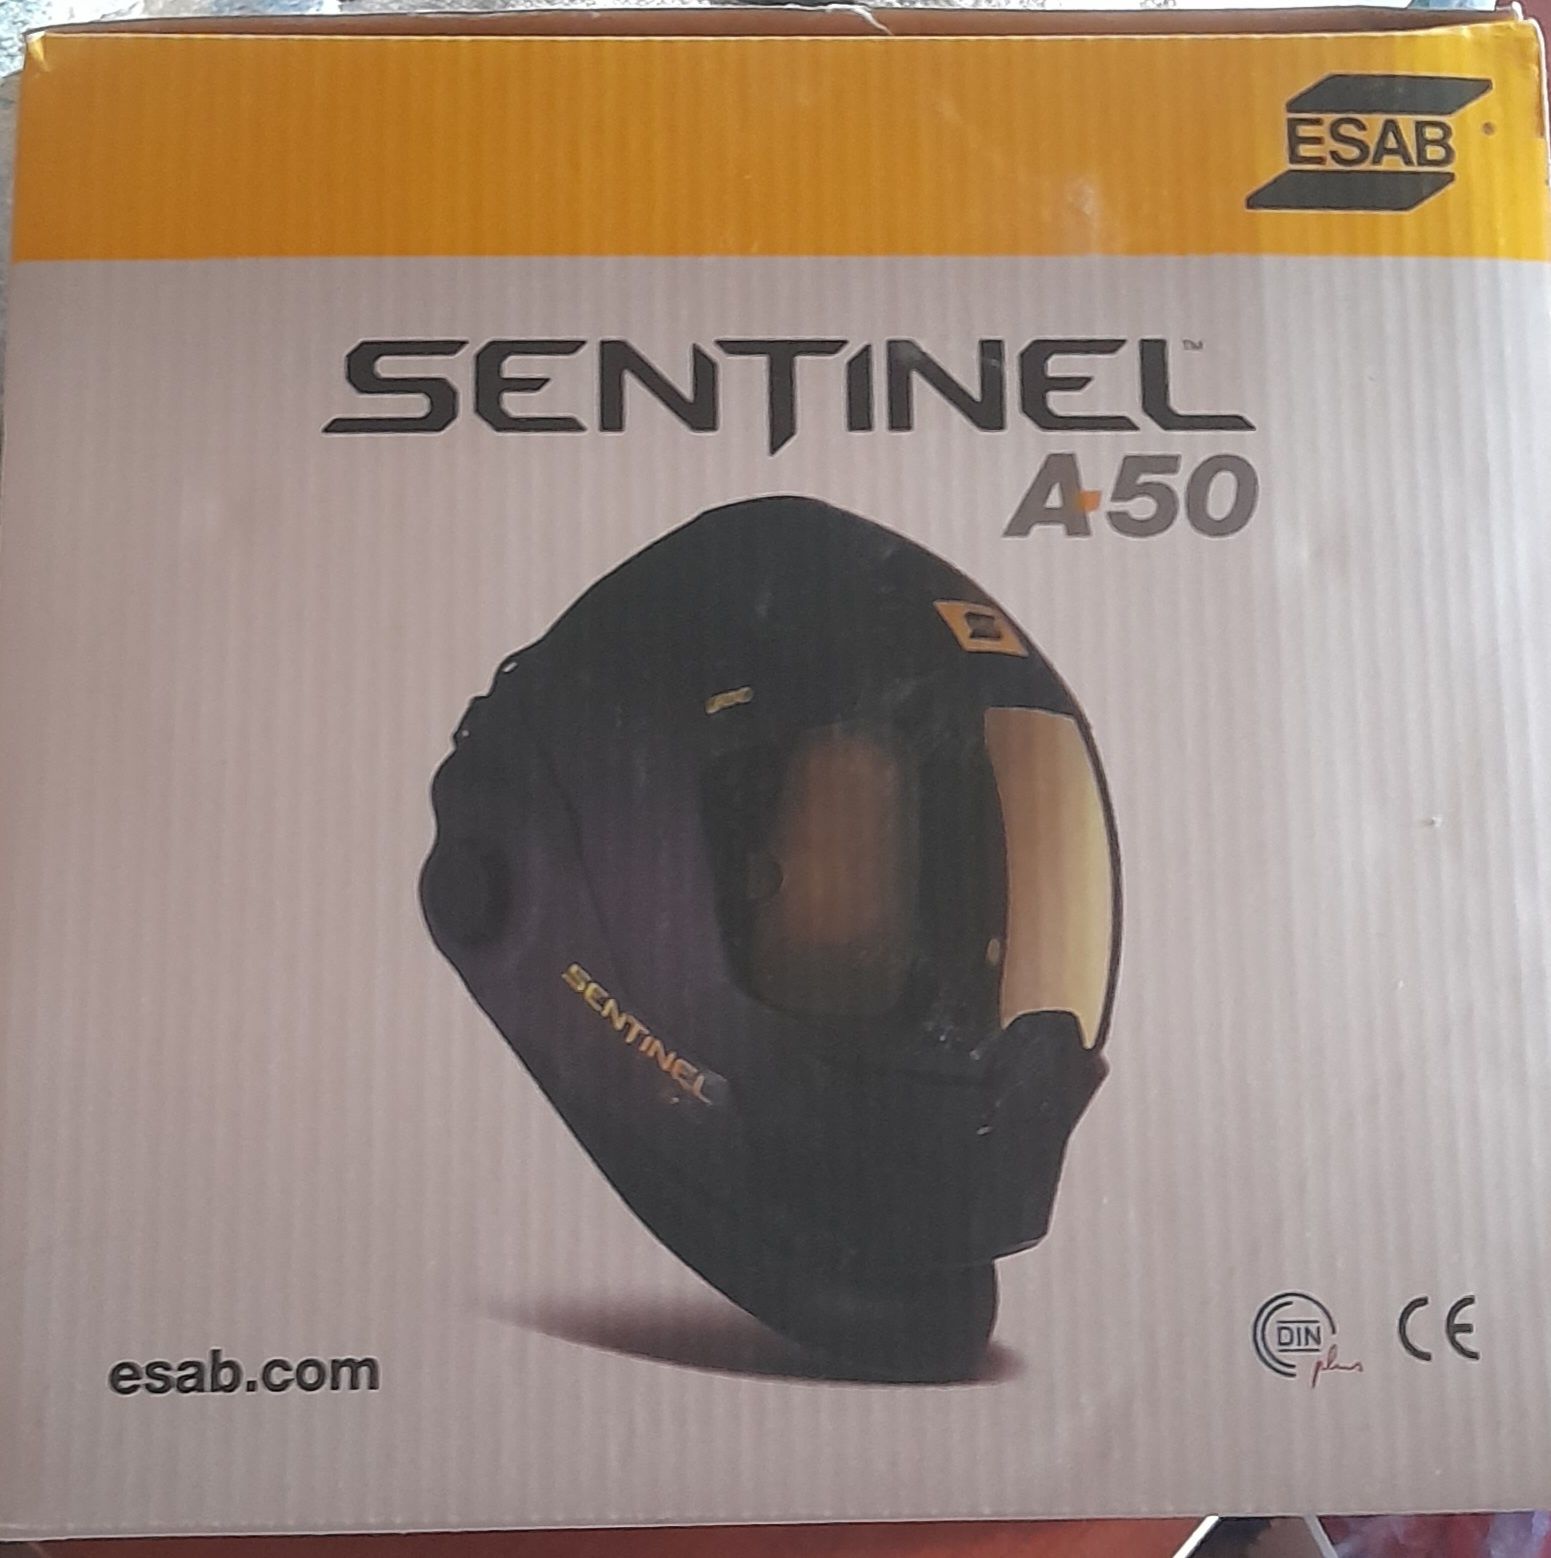 Cварочная маска SENTINEL A50 ESAB с автоматическим светофильтром, пано